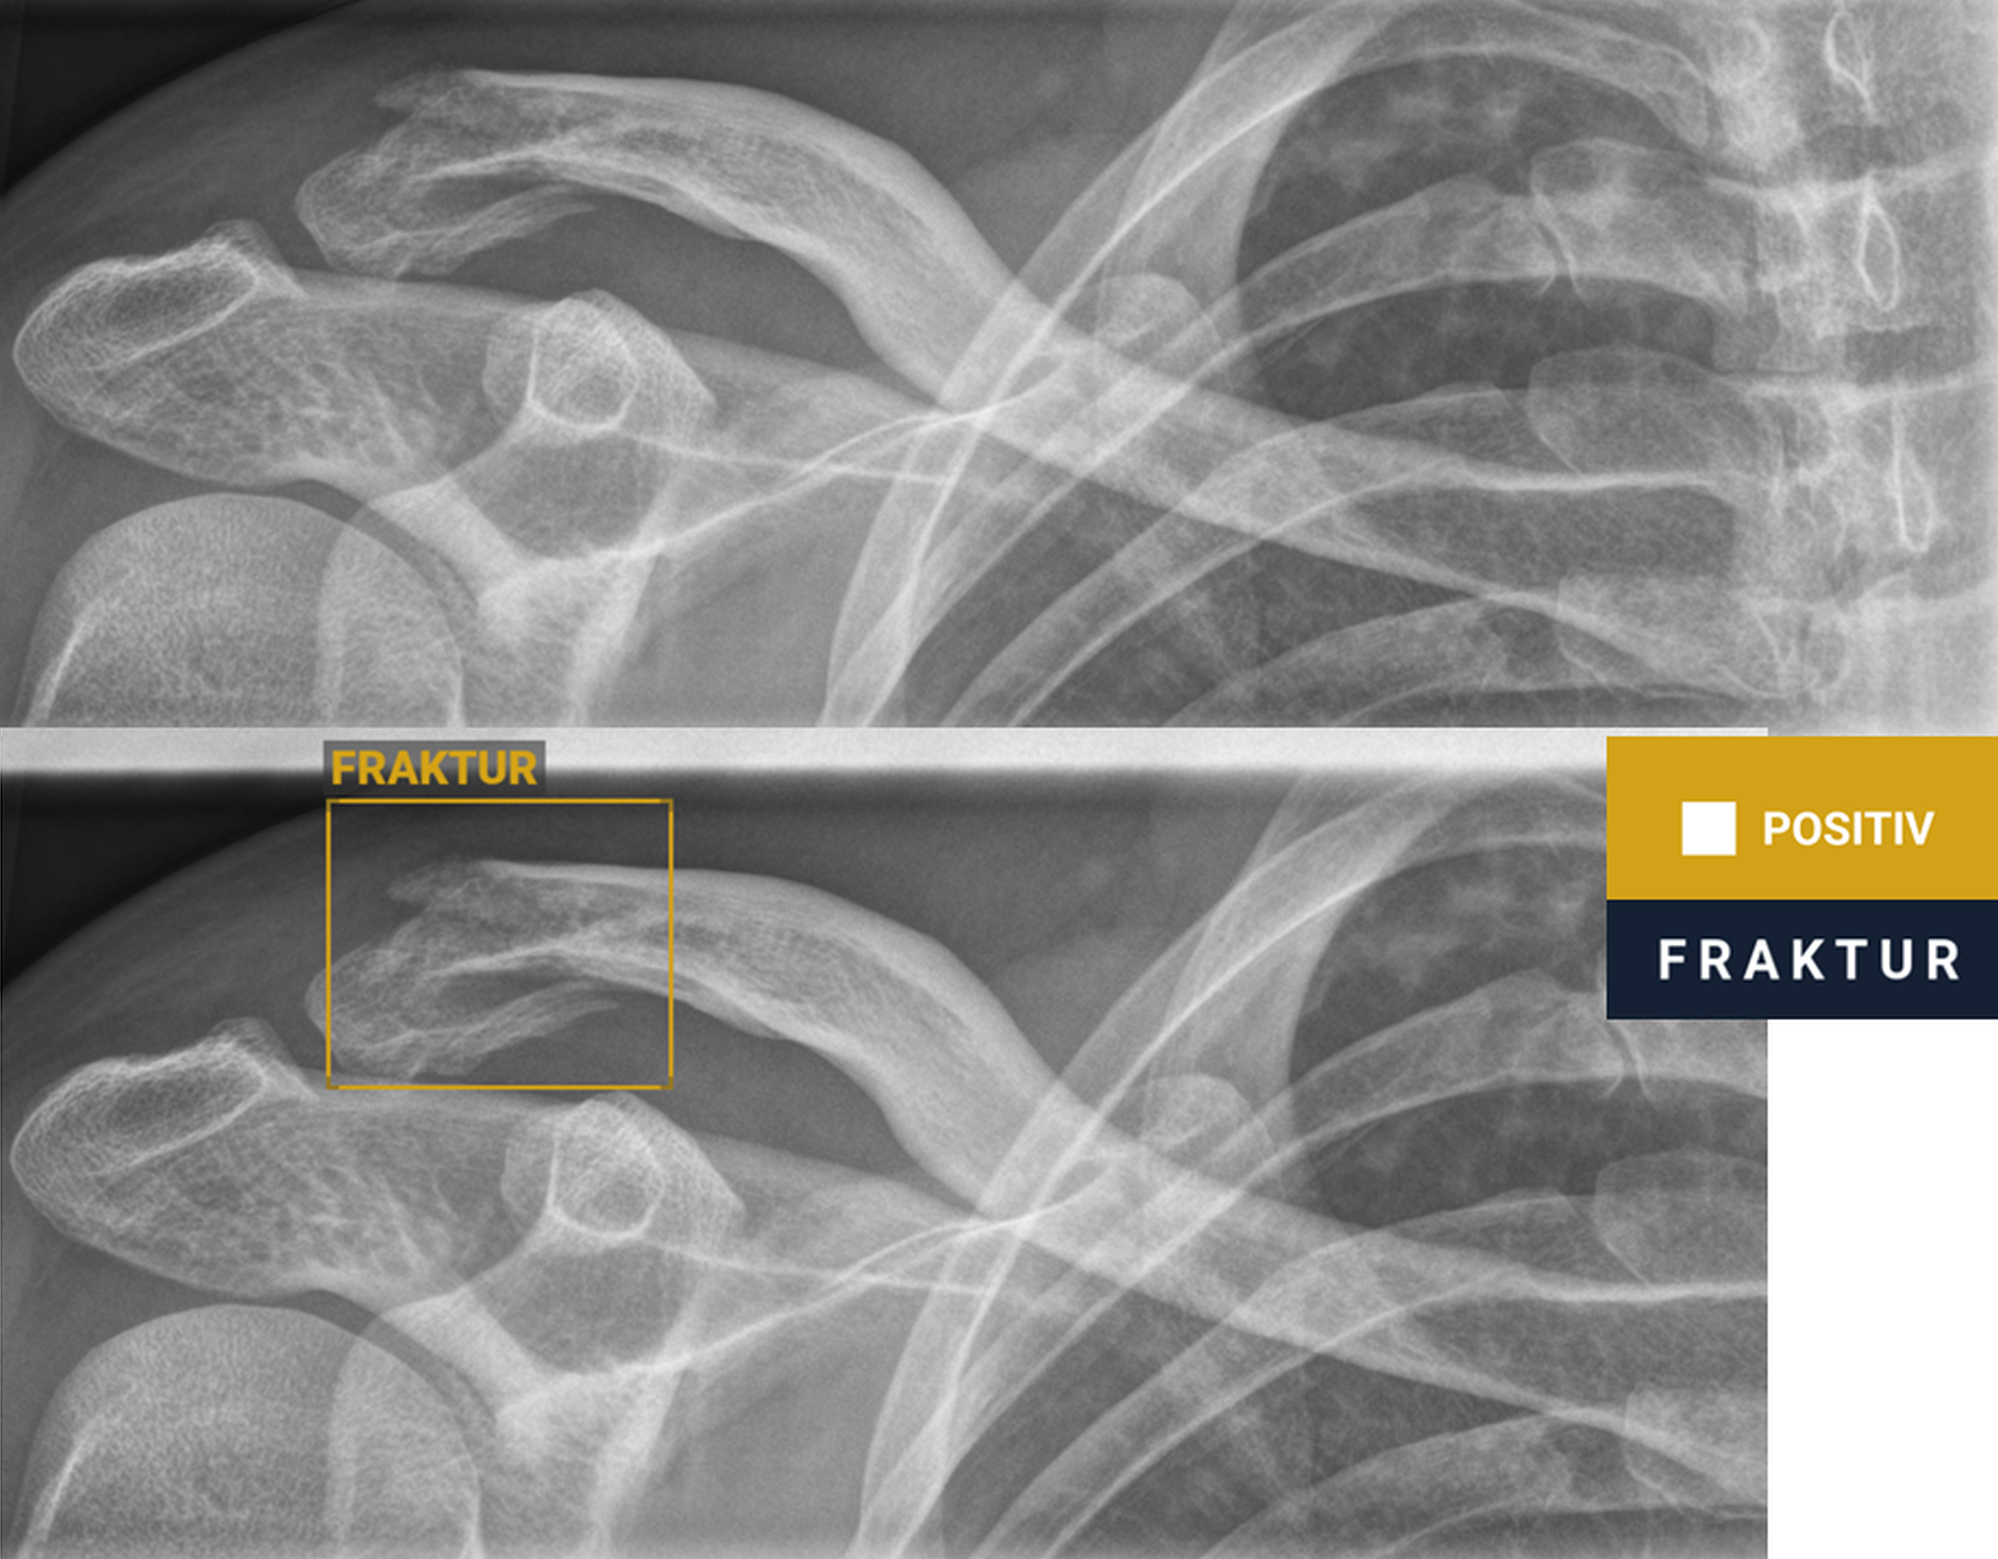 Röntgenbild mit Frakturnachweis (Bruch des rechten Schlüsselbeins)